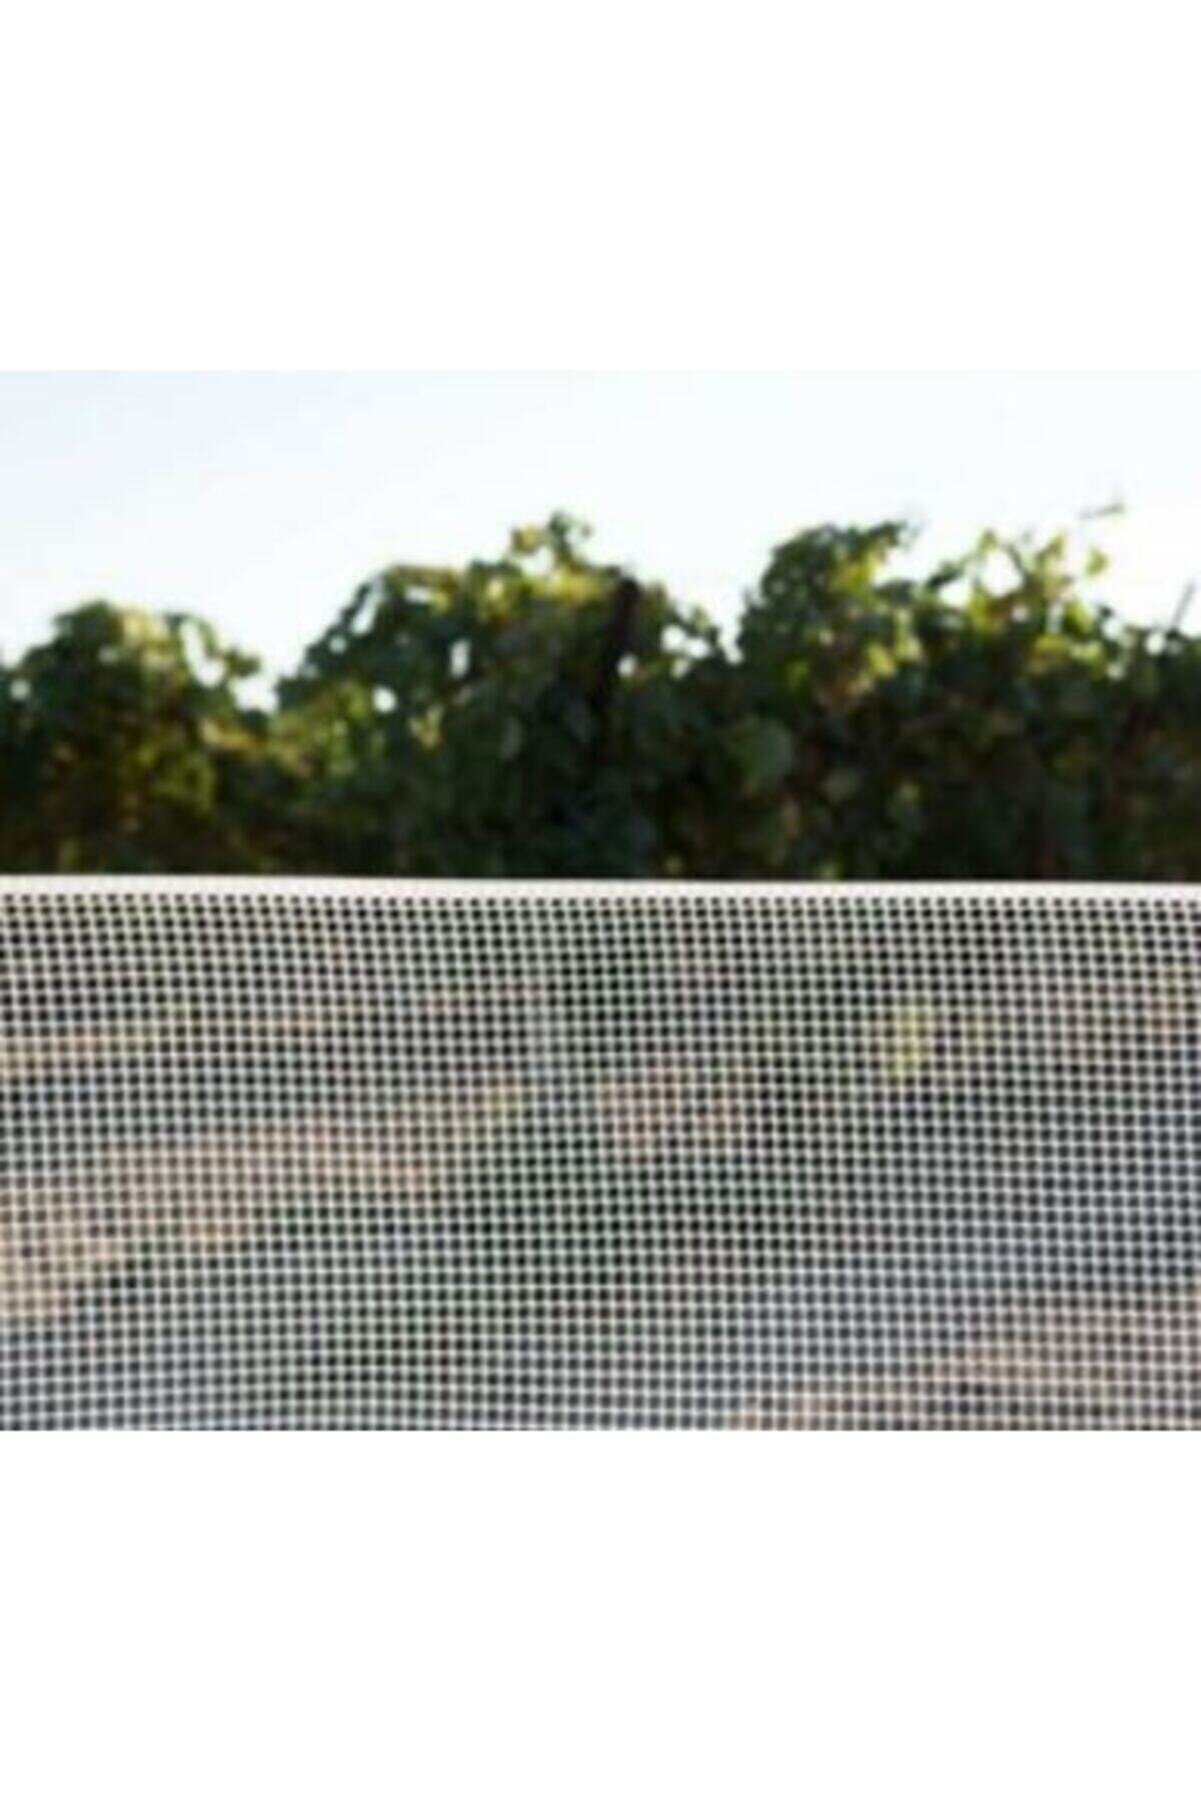 Vonkap Plastik Dekoratif Bahçe Çiti / Balkon Filesi / Kedi Filesi 1mt*3mt 10mm*10mm Göz Aralığında